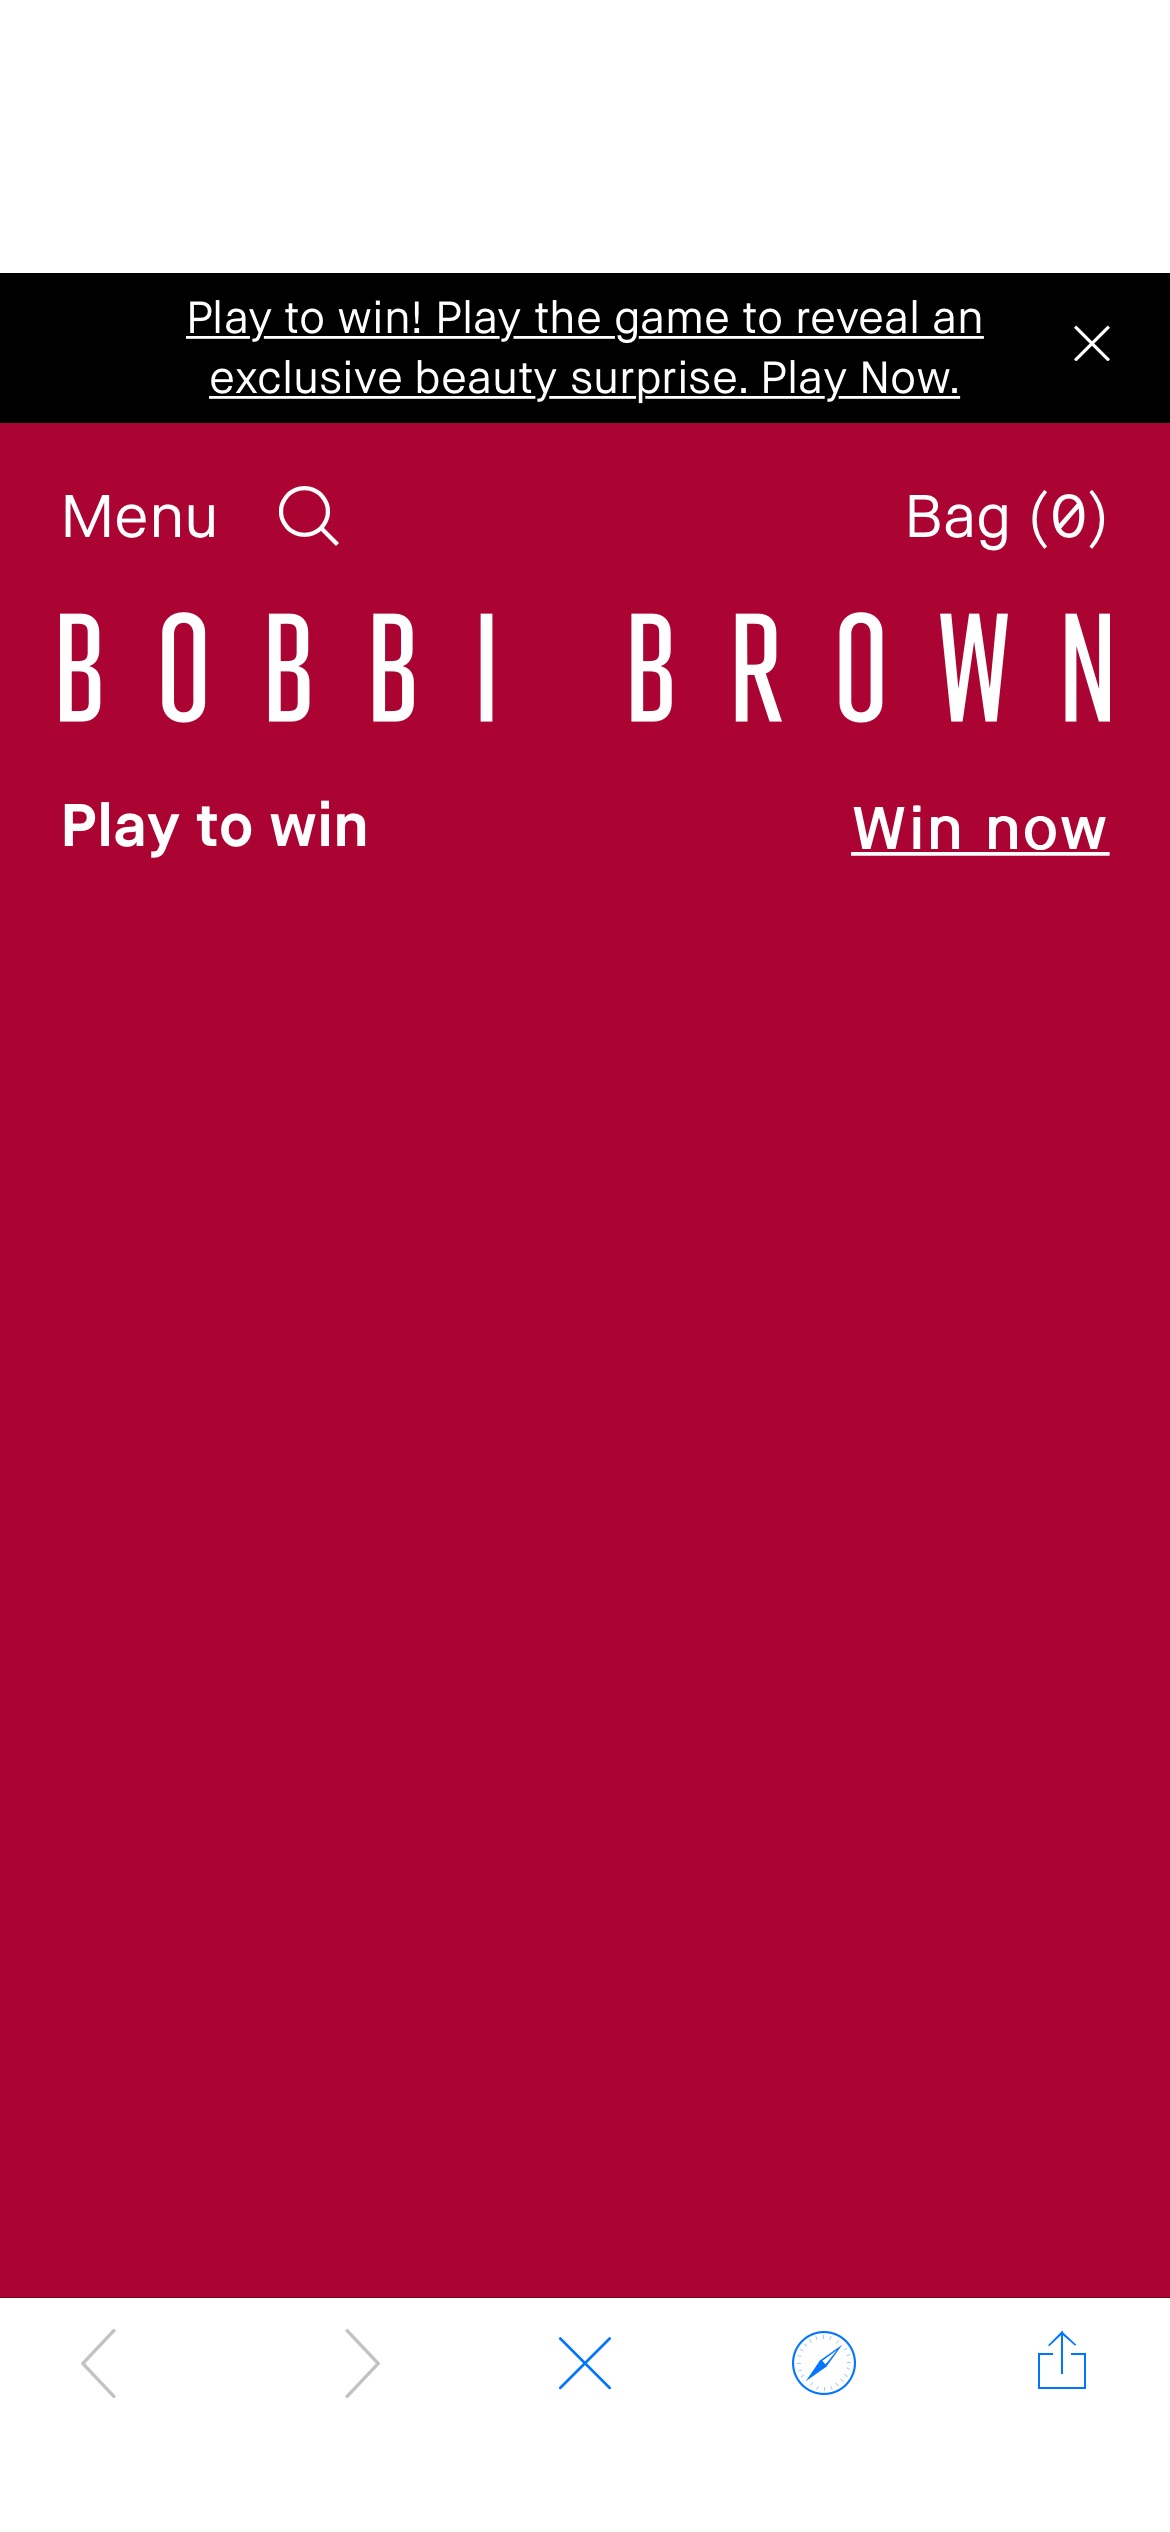 Bobbi brown 75折